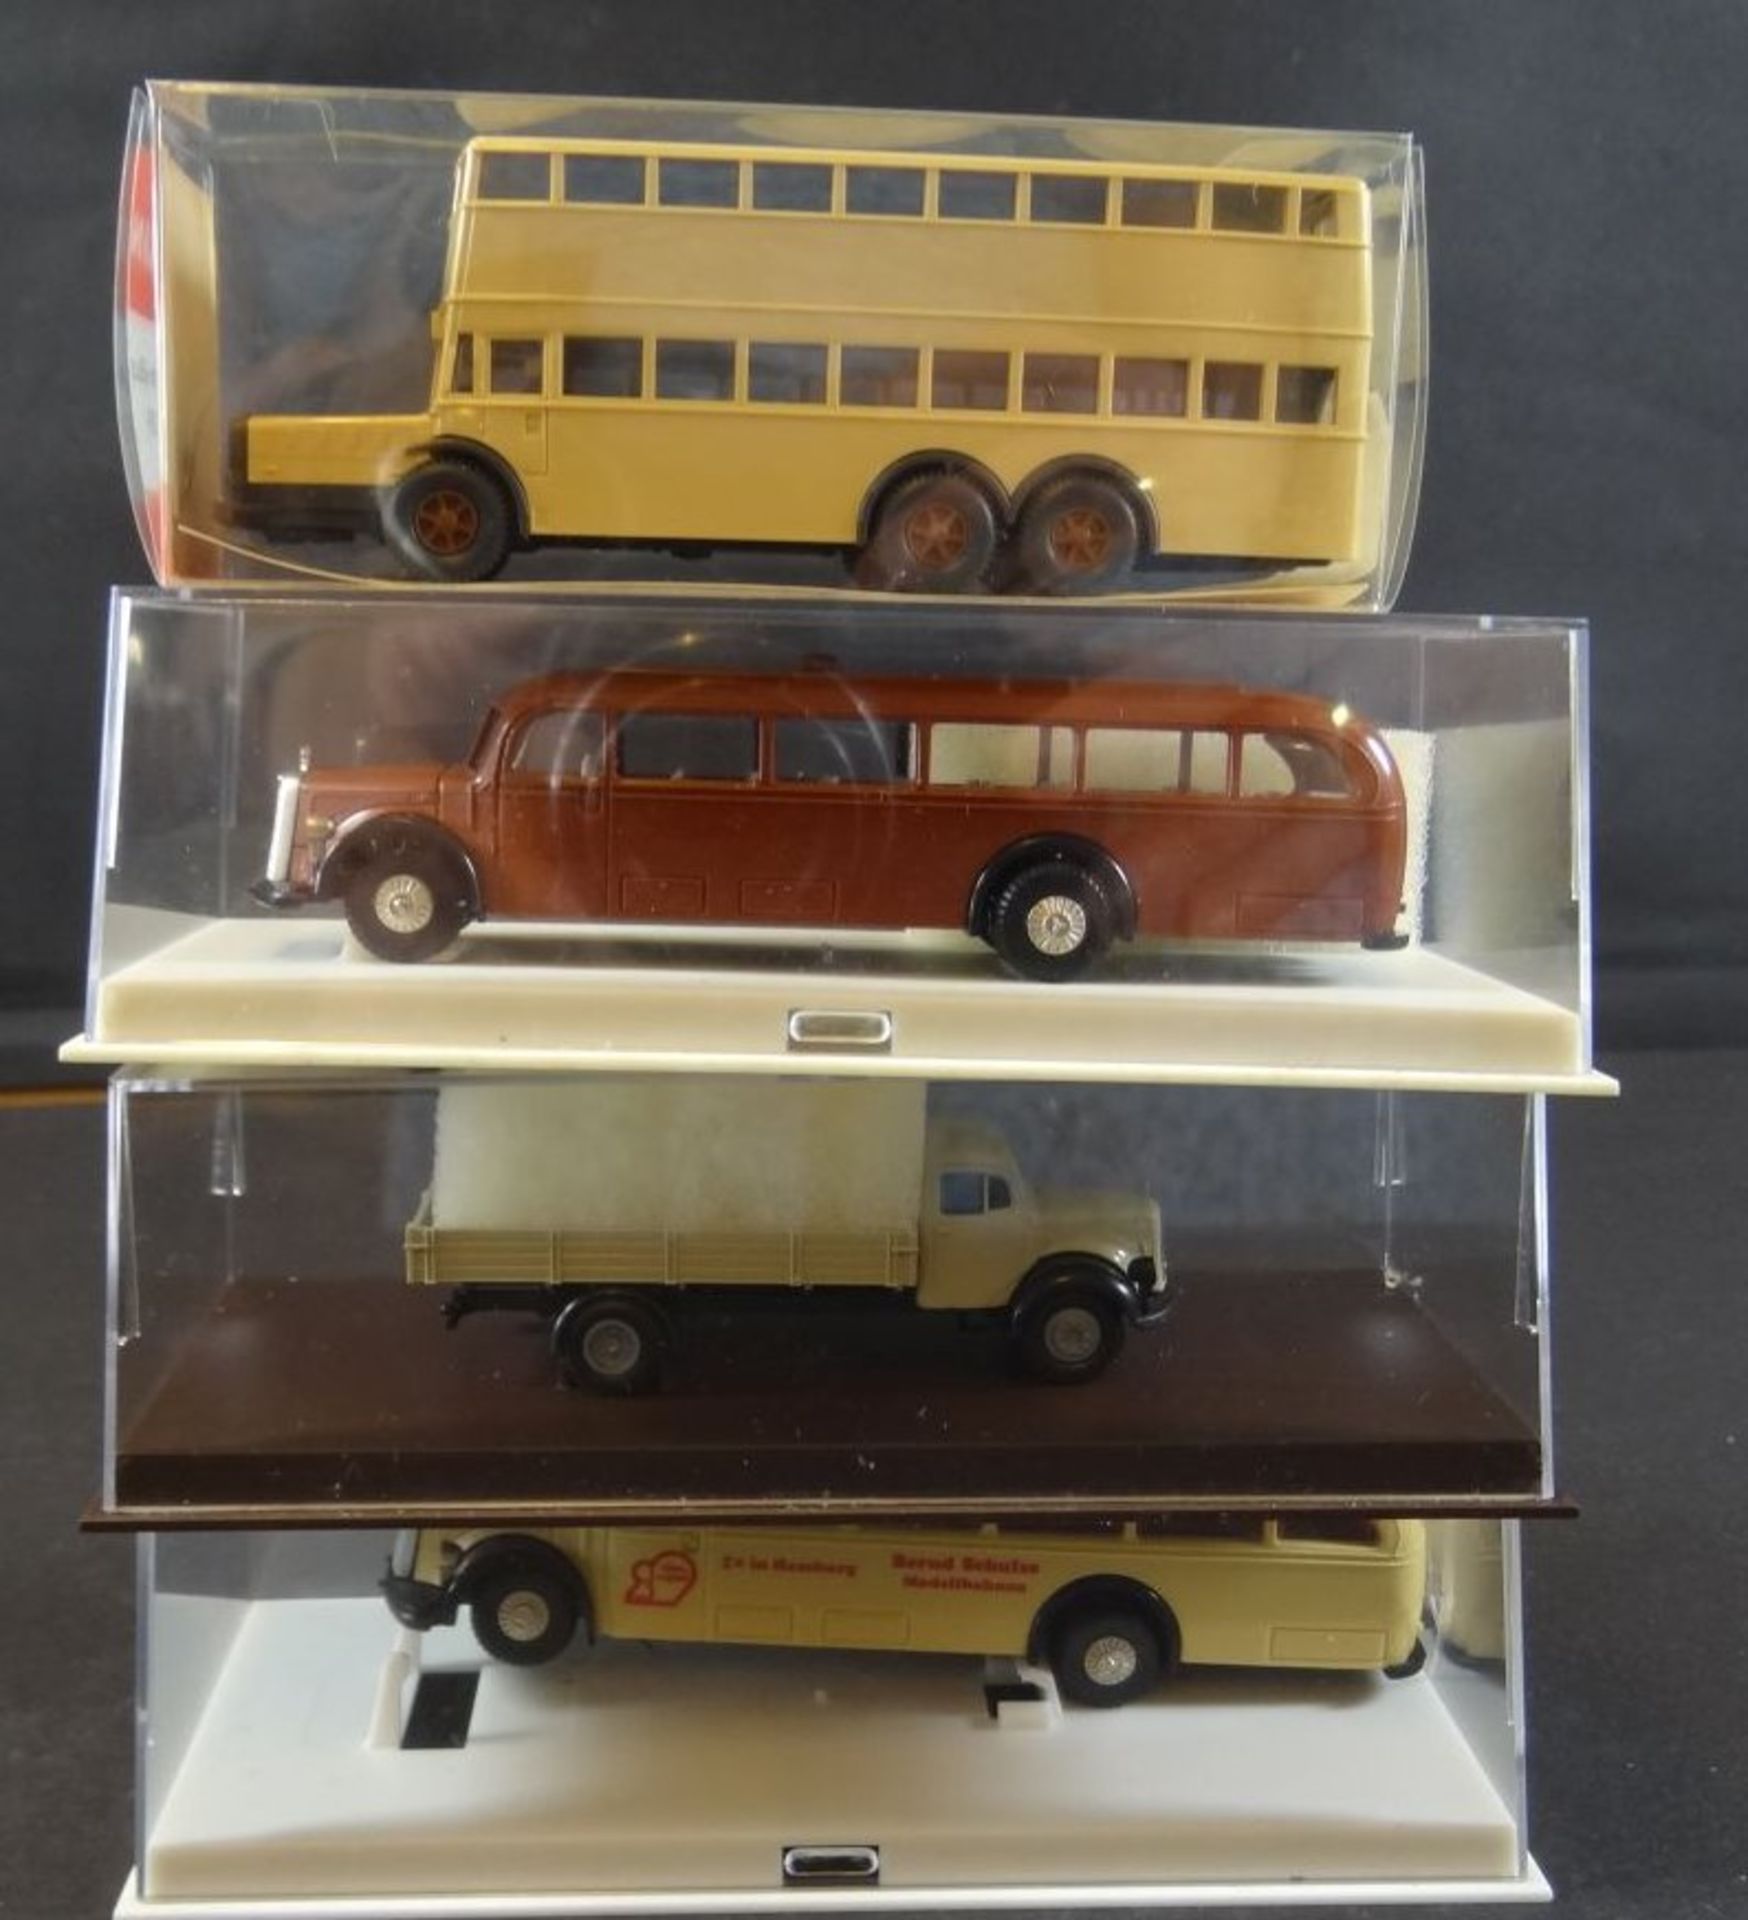 Karton mit 9 Modellautos bzw. Bussen, LKW, hpts. Wiking, tw. boxed - Bild 4 aus 8